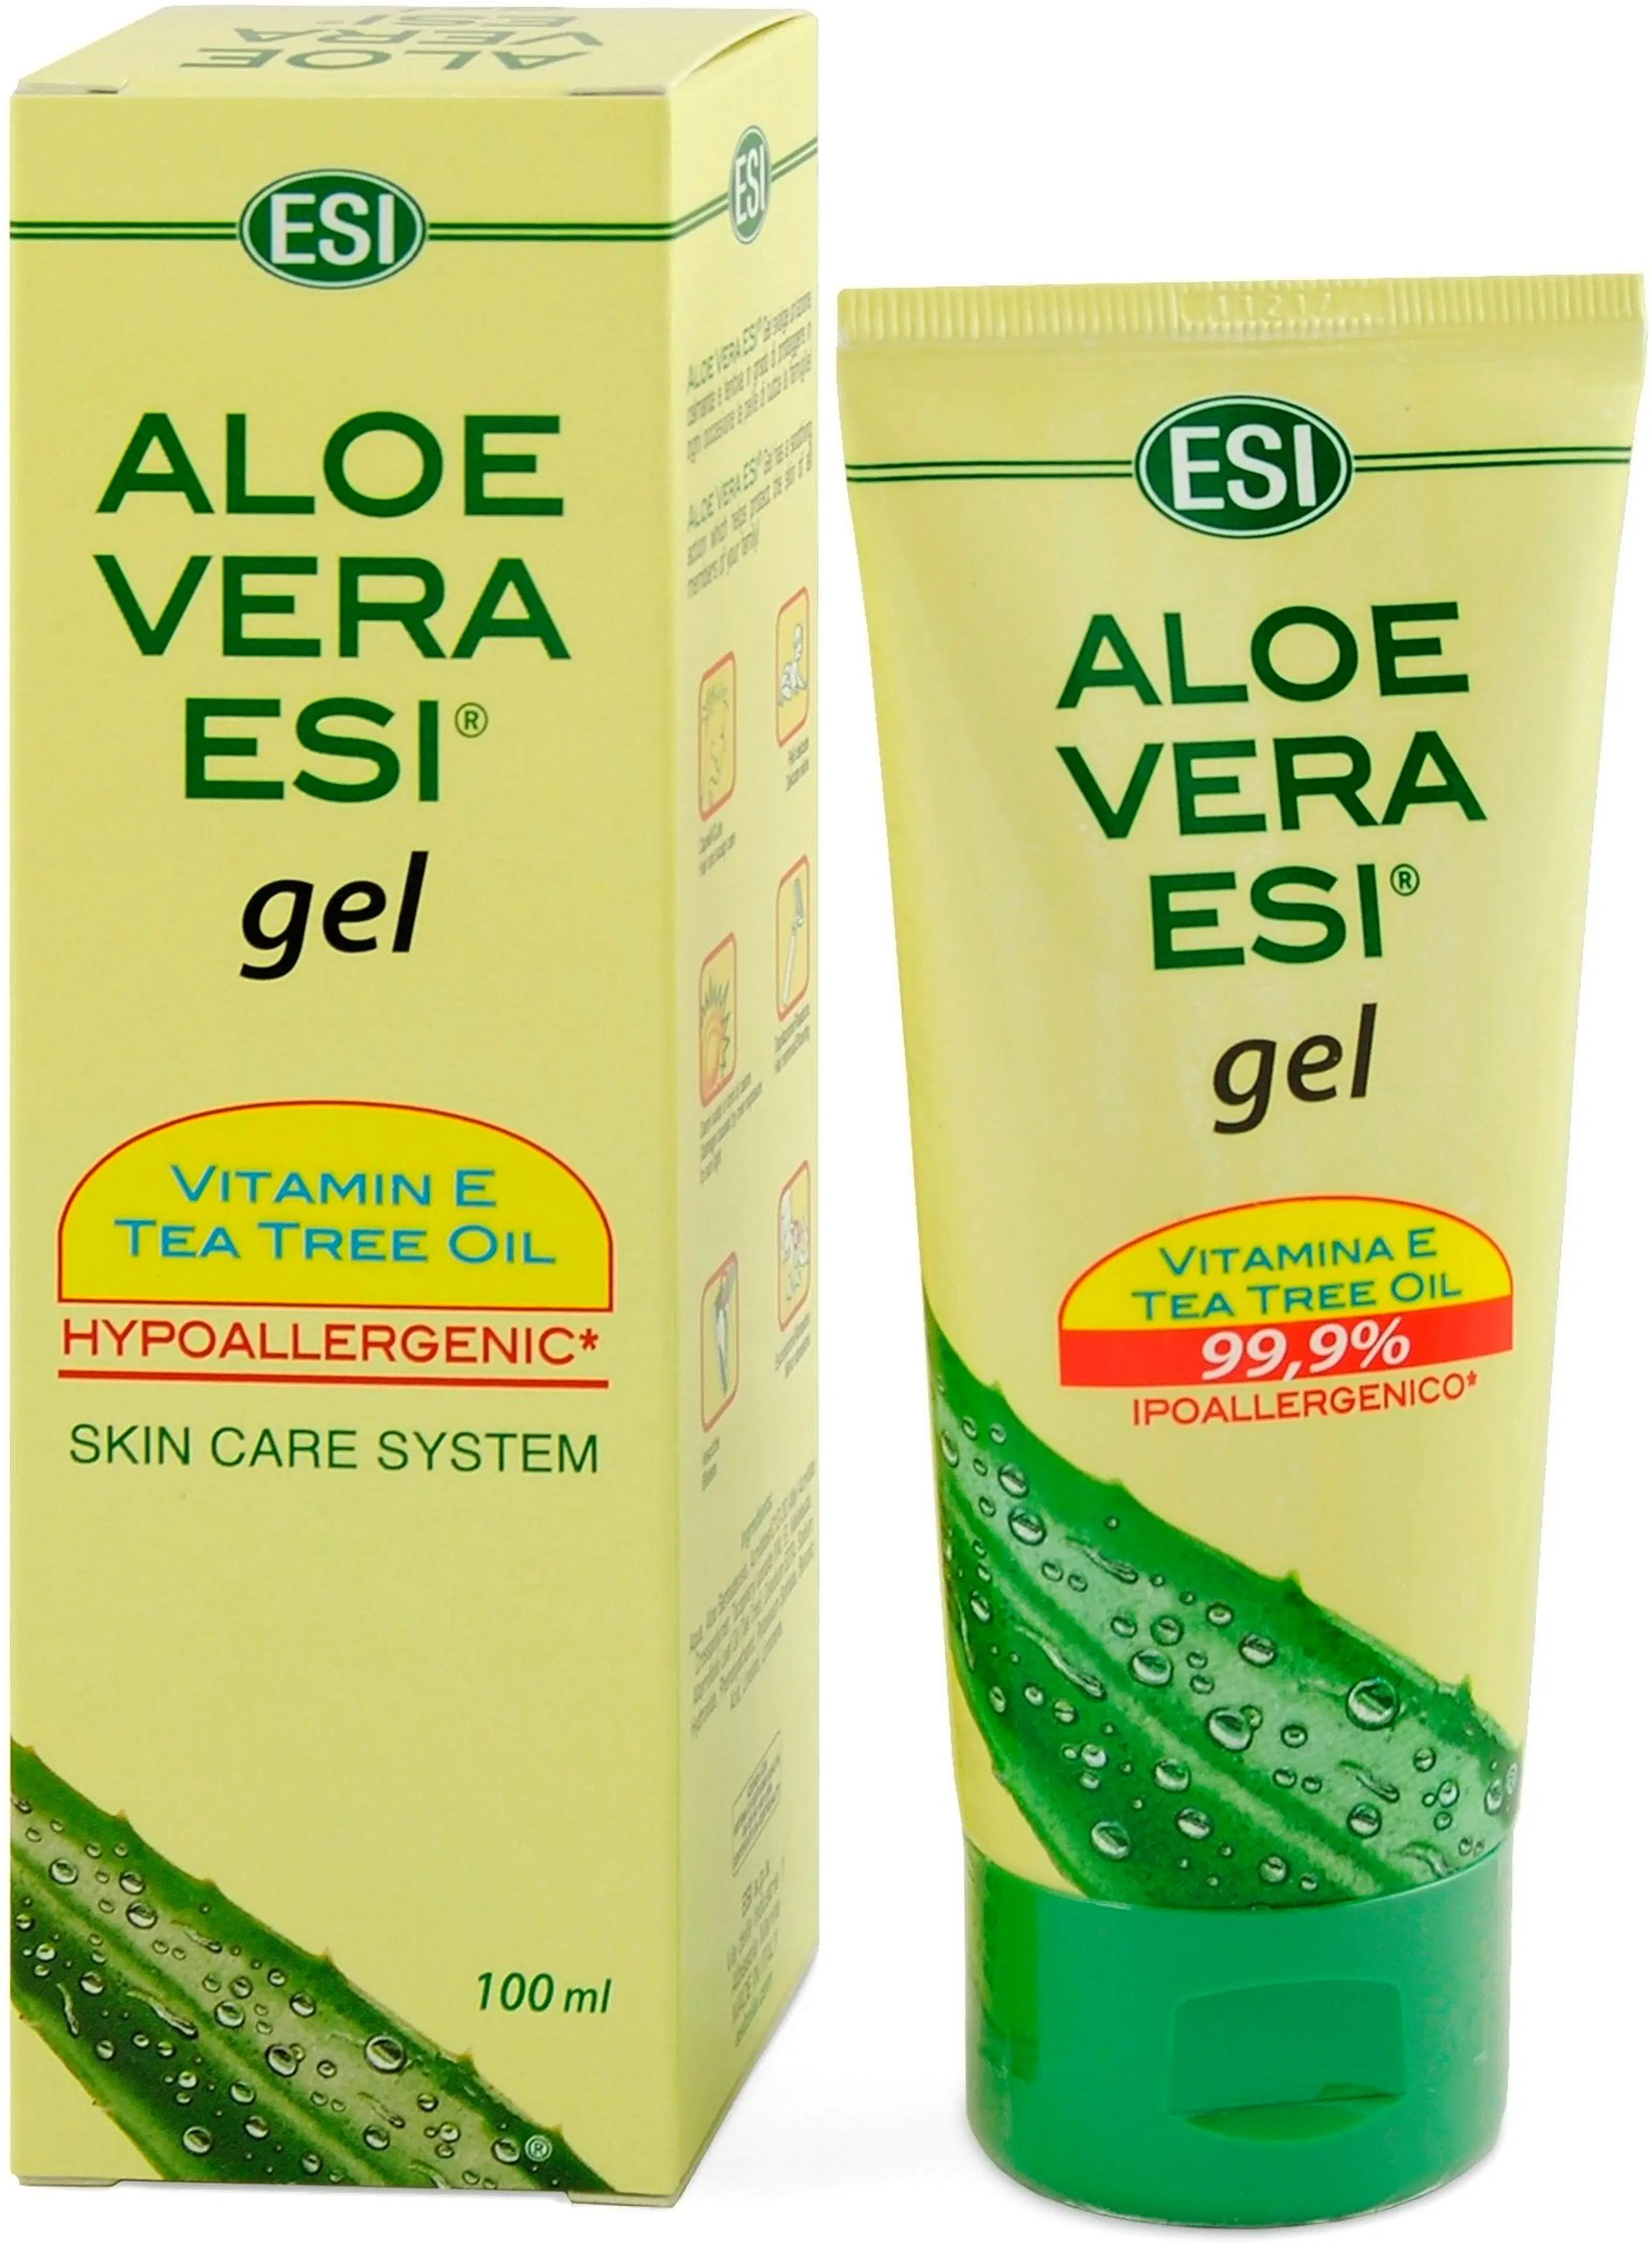 ESI Aloe Vera Esi® + E-vitamiini + Teatree geeli 100% 100 ml